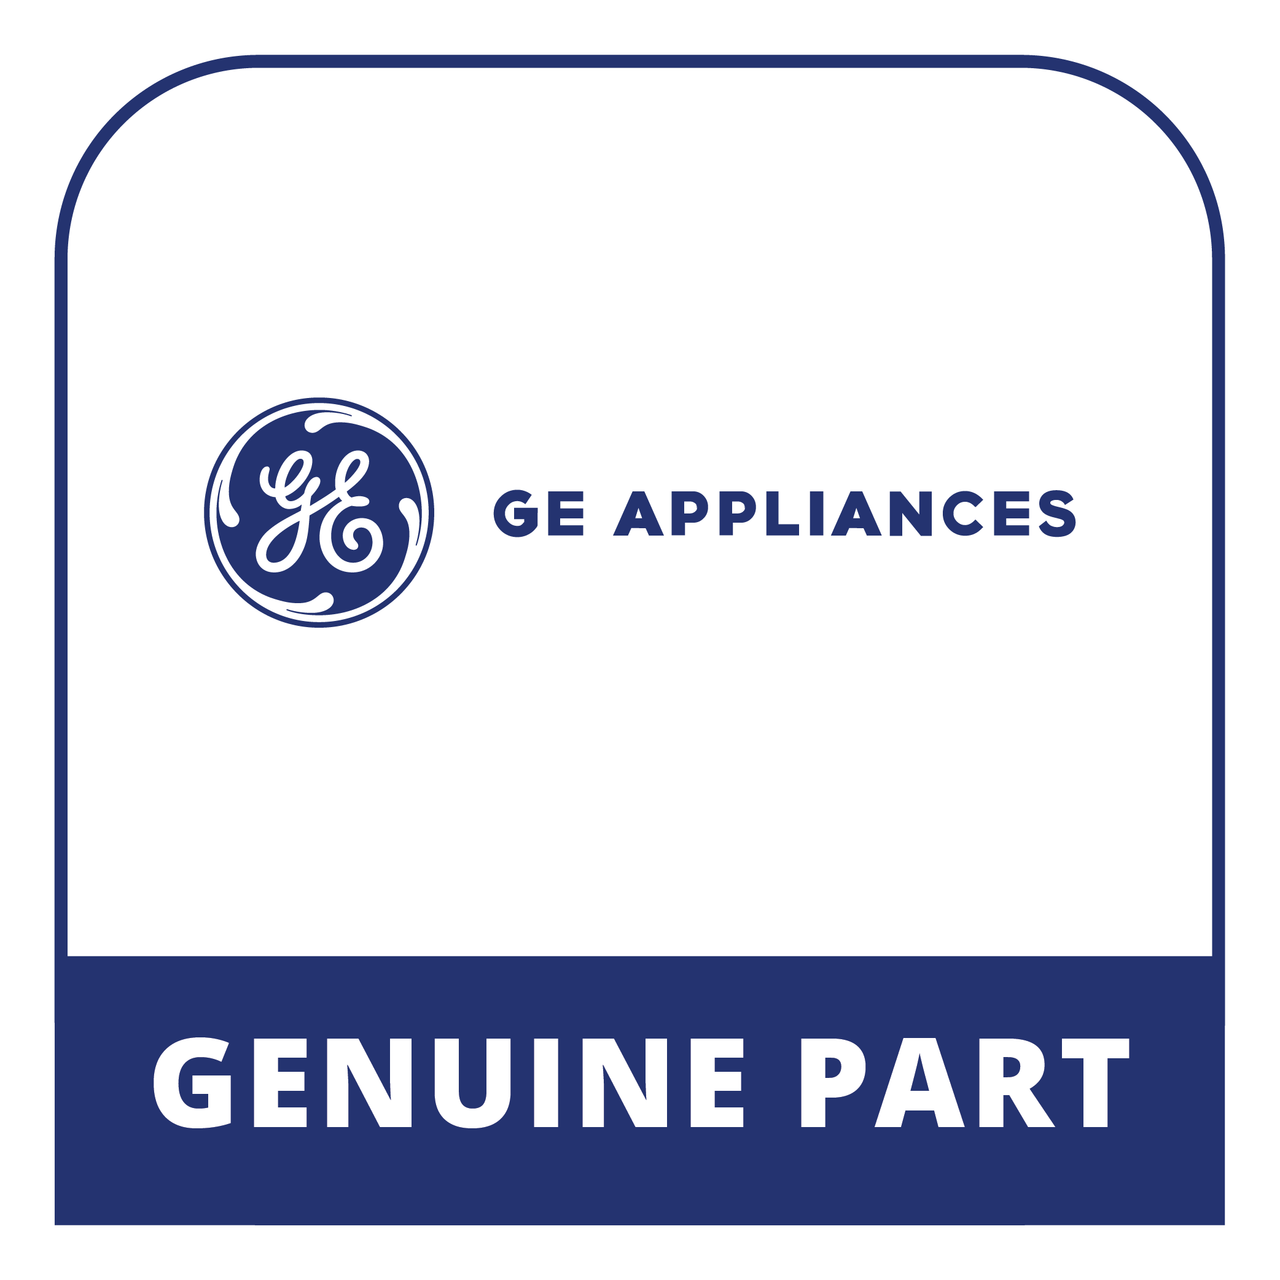 GE Appliances WB01X47090 - Scr 10-32 Trwt-20 1/2 S - Genuine GE Appliances Part